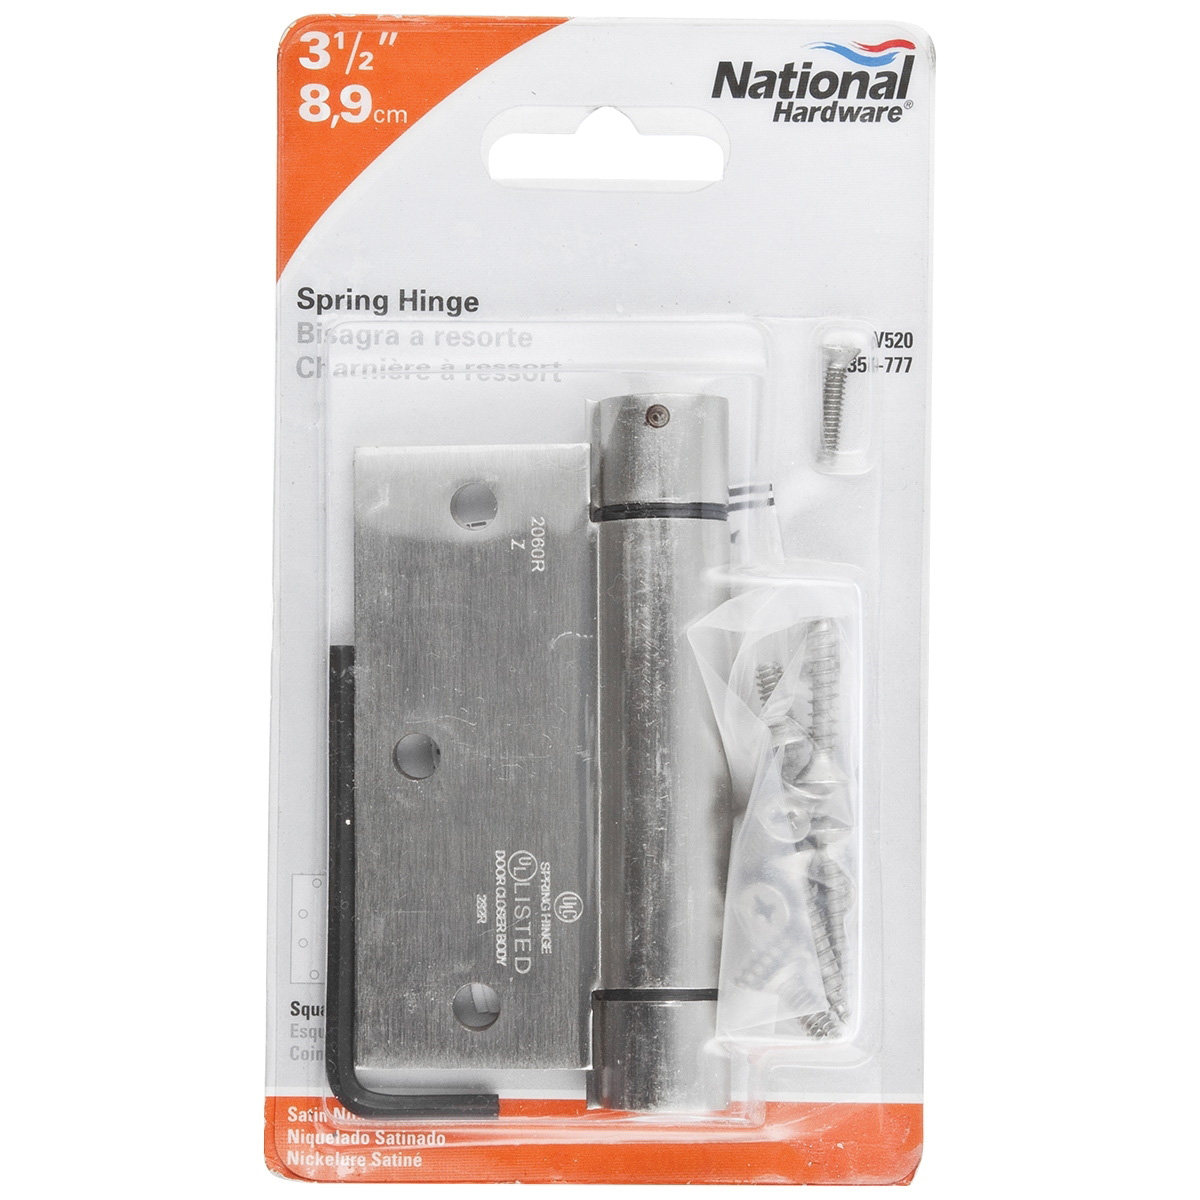 N350-777 Spring Hinge, Cold Rolled Steel, Satin Nickel, 30 lb